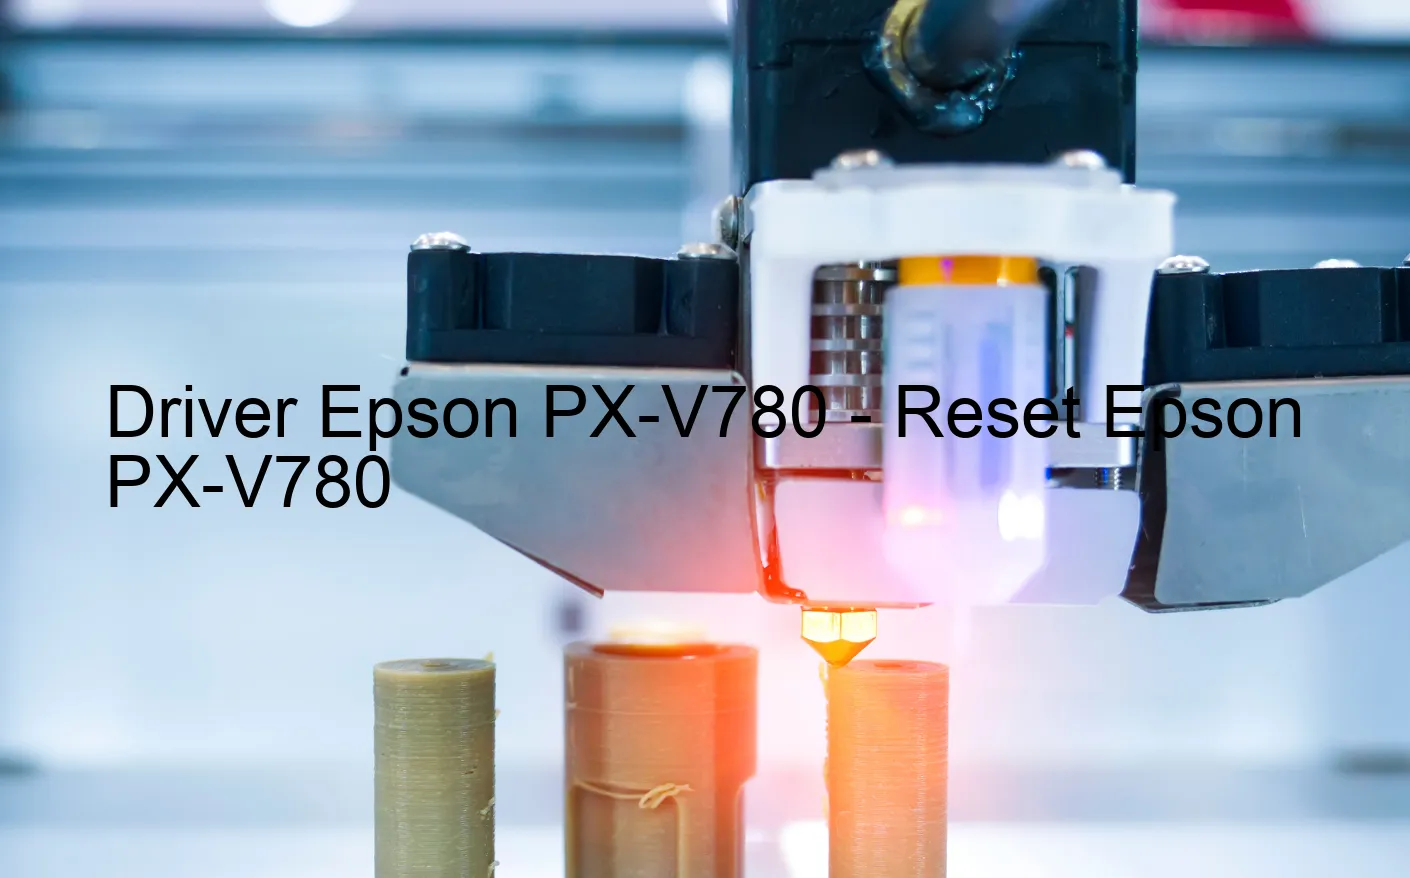 Epson PX-V780のドライバー、Epson PX-V780のリセットソフトウェア